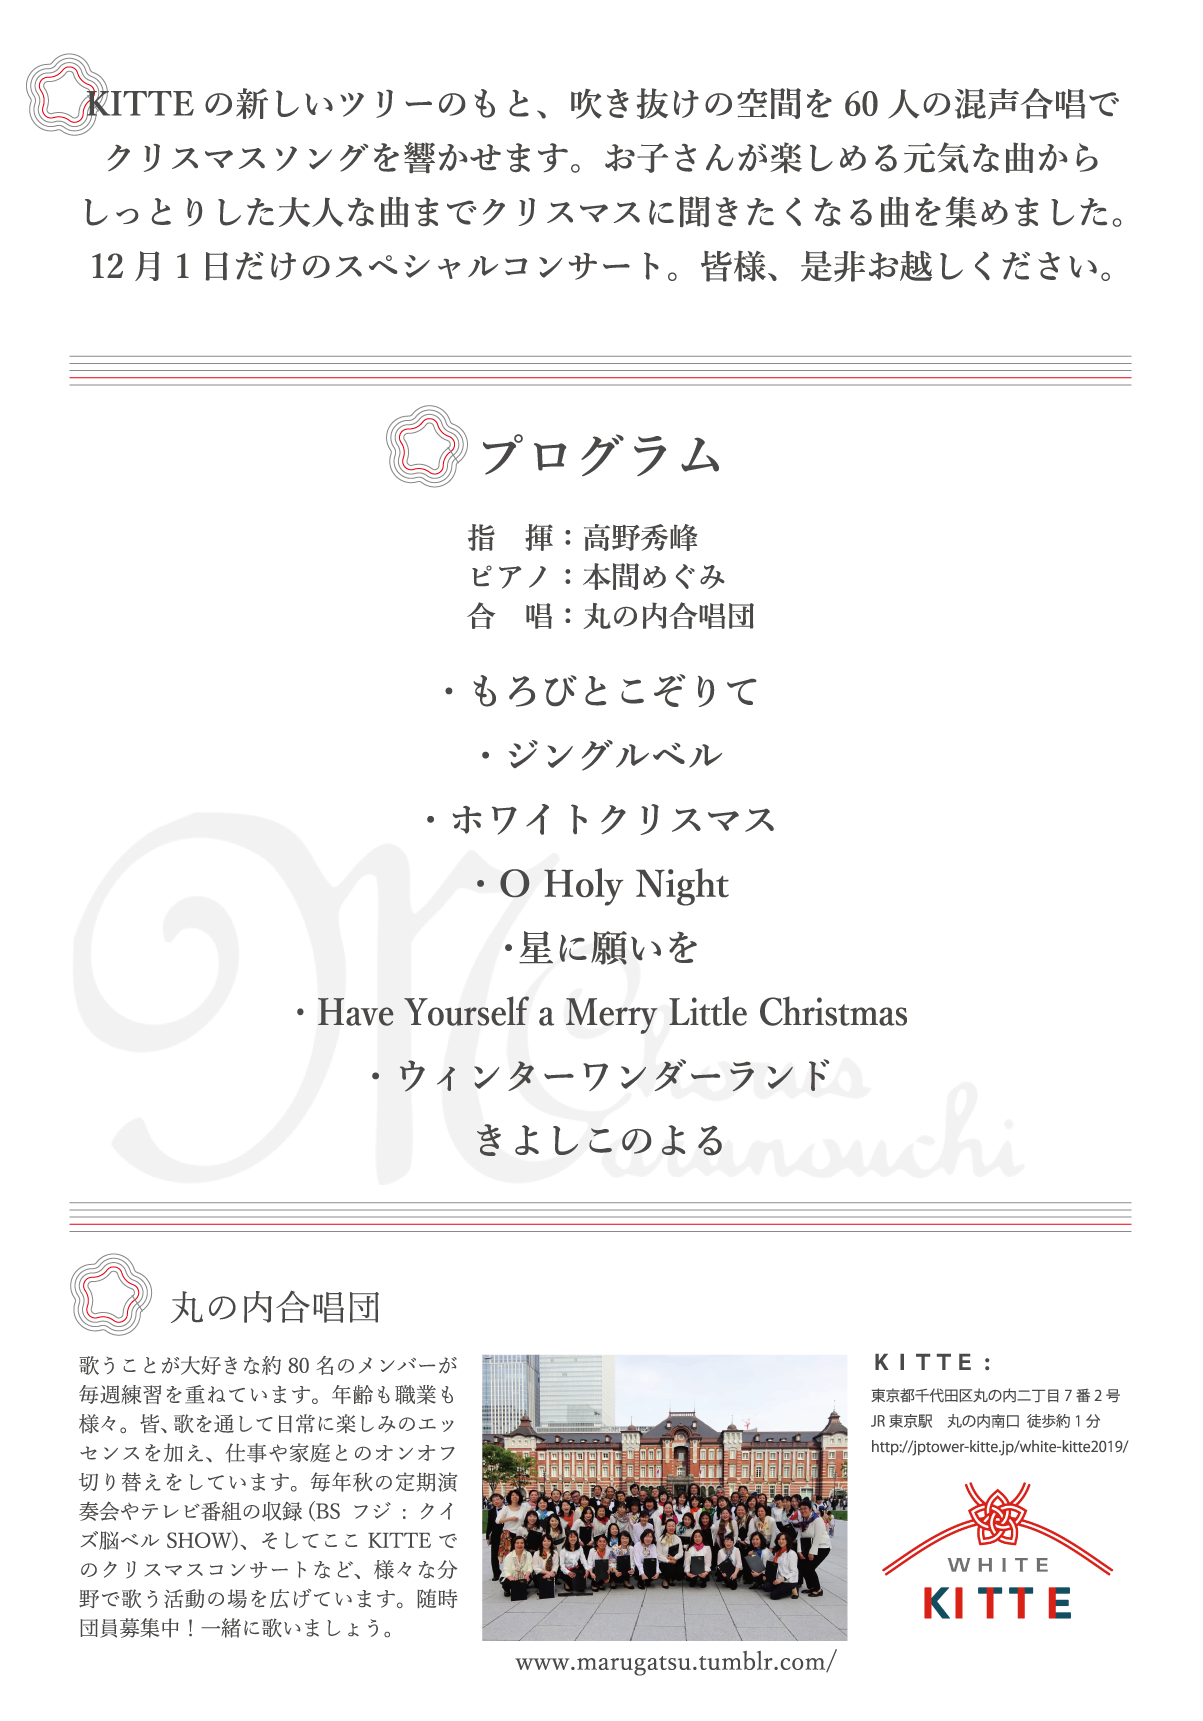 丸の内合唱団 KITTEクリスマスコンサート | 東京 中央区を拠点に活動するアマチュア社会人混声合唱団